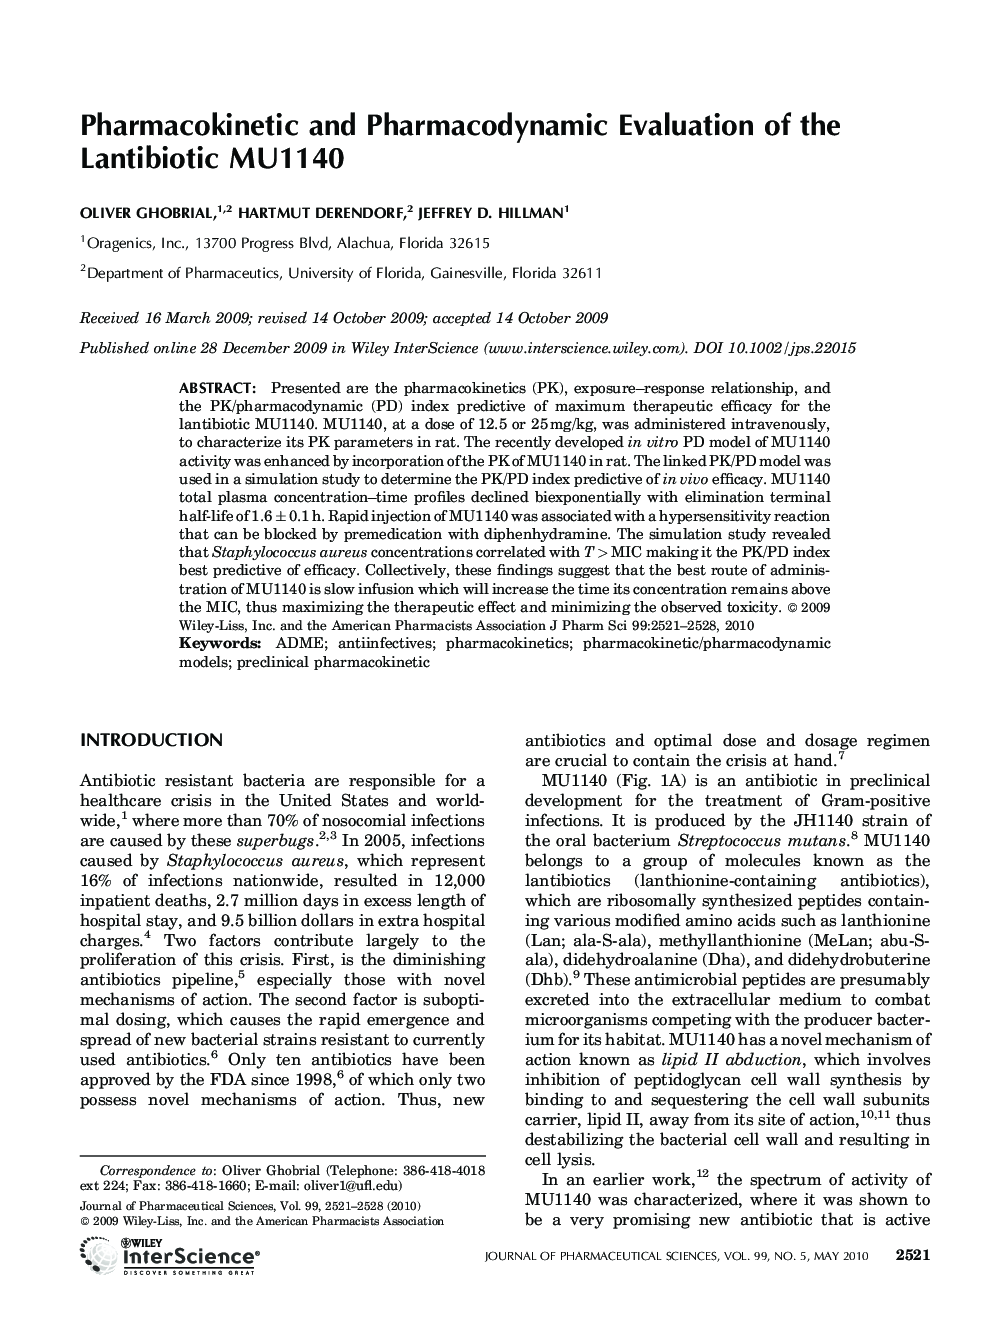 Pharmacokinetic and pharmacodynamic evaluation of the lantibiotic MU1140